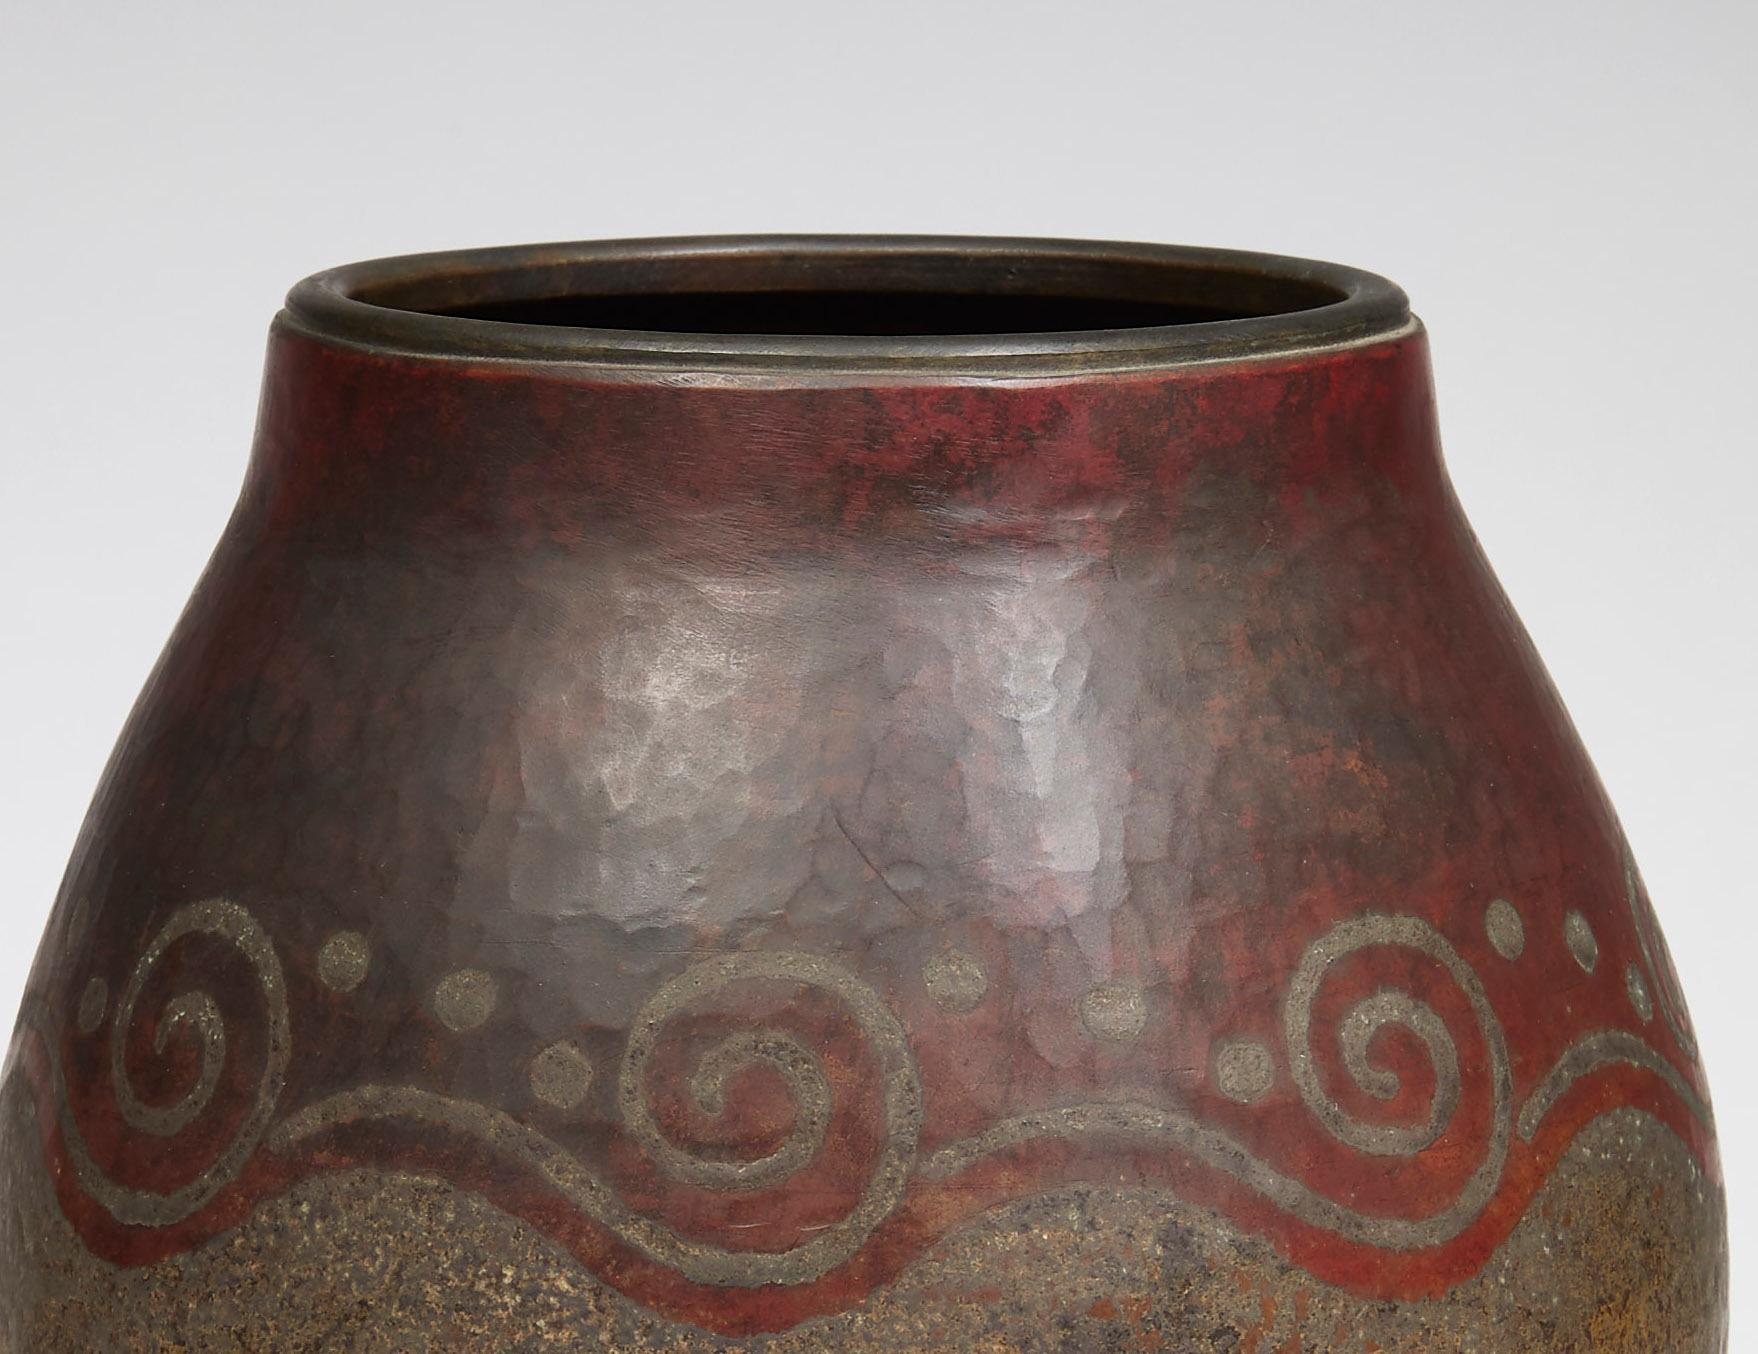 Vase galbé à large col en cuivre à patine moirée, décoré d'ondulations et de pointillés à patine feu. Signé et numéroté 7295 sous le socle.